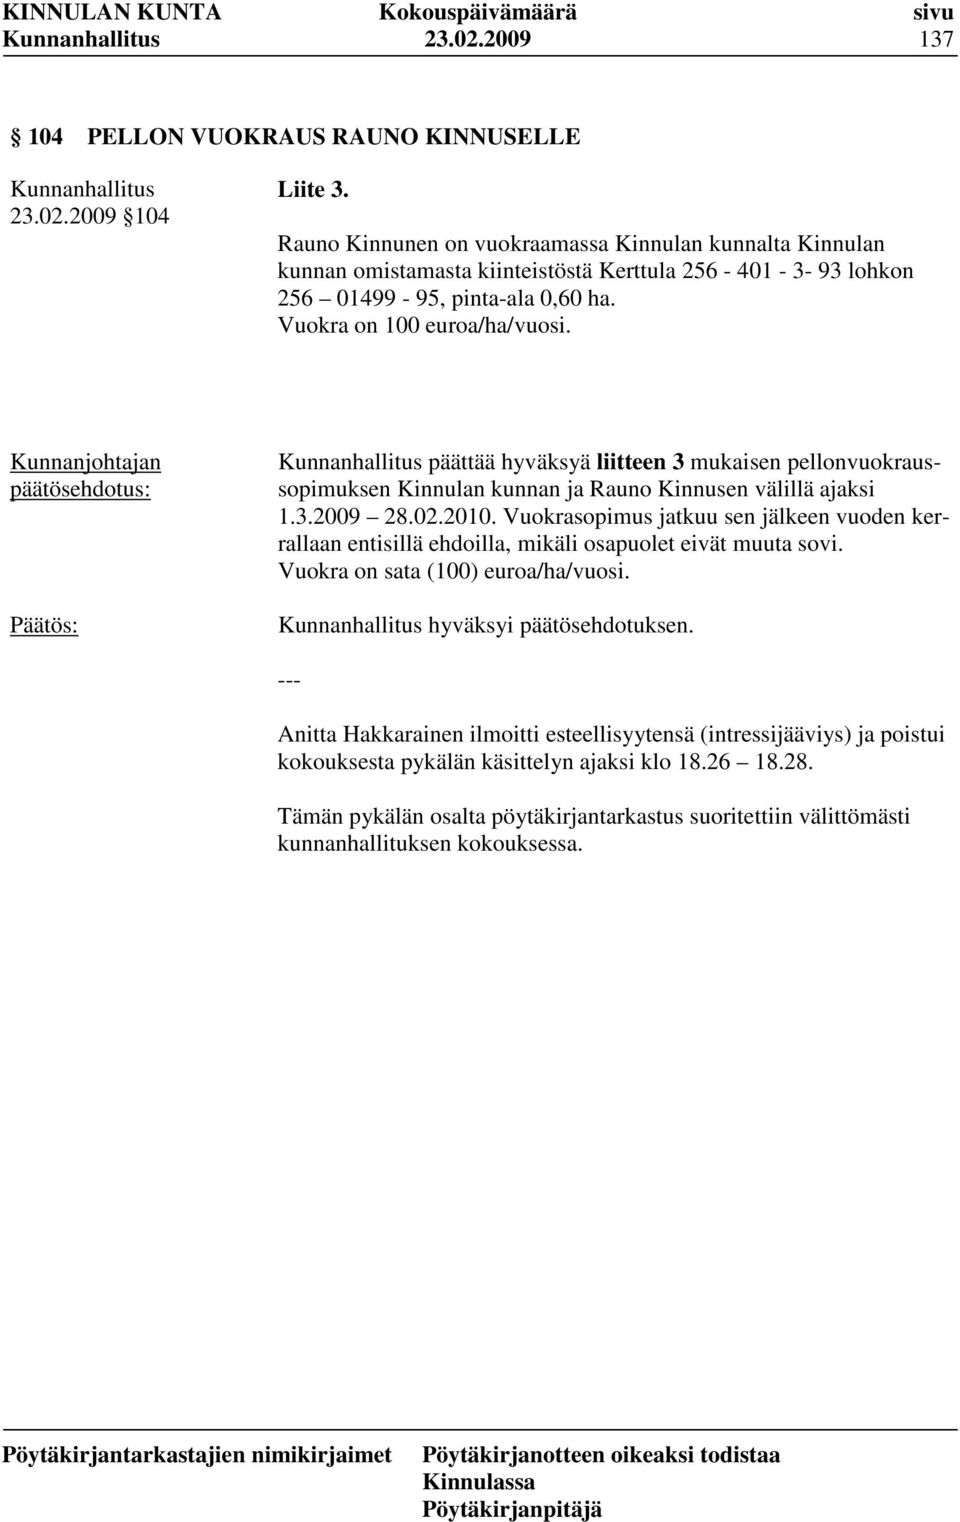 päättää hyväksyä liitteen 3 mukaisen pellonvuokraussopimuksen Kinnulan kunnan ja Rauno Kinnusen välillä ajaksi 1.3.2009 28.02.2010.